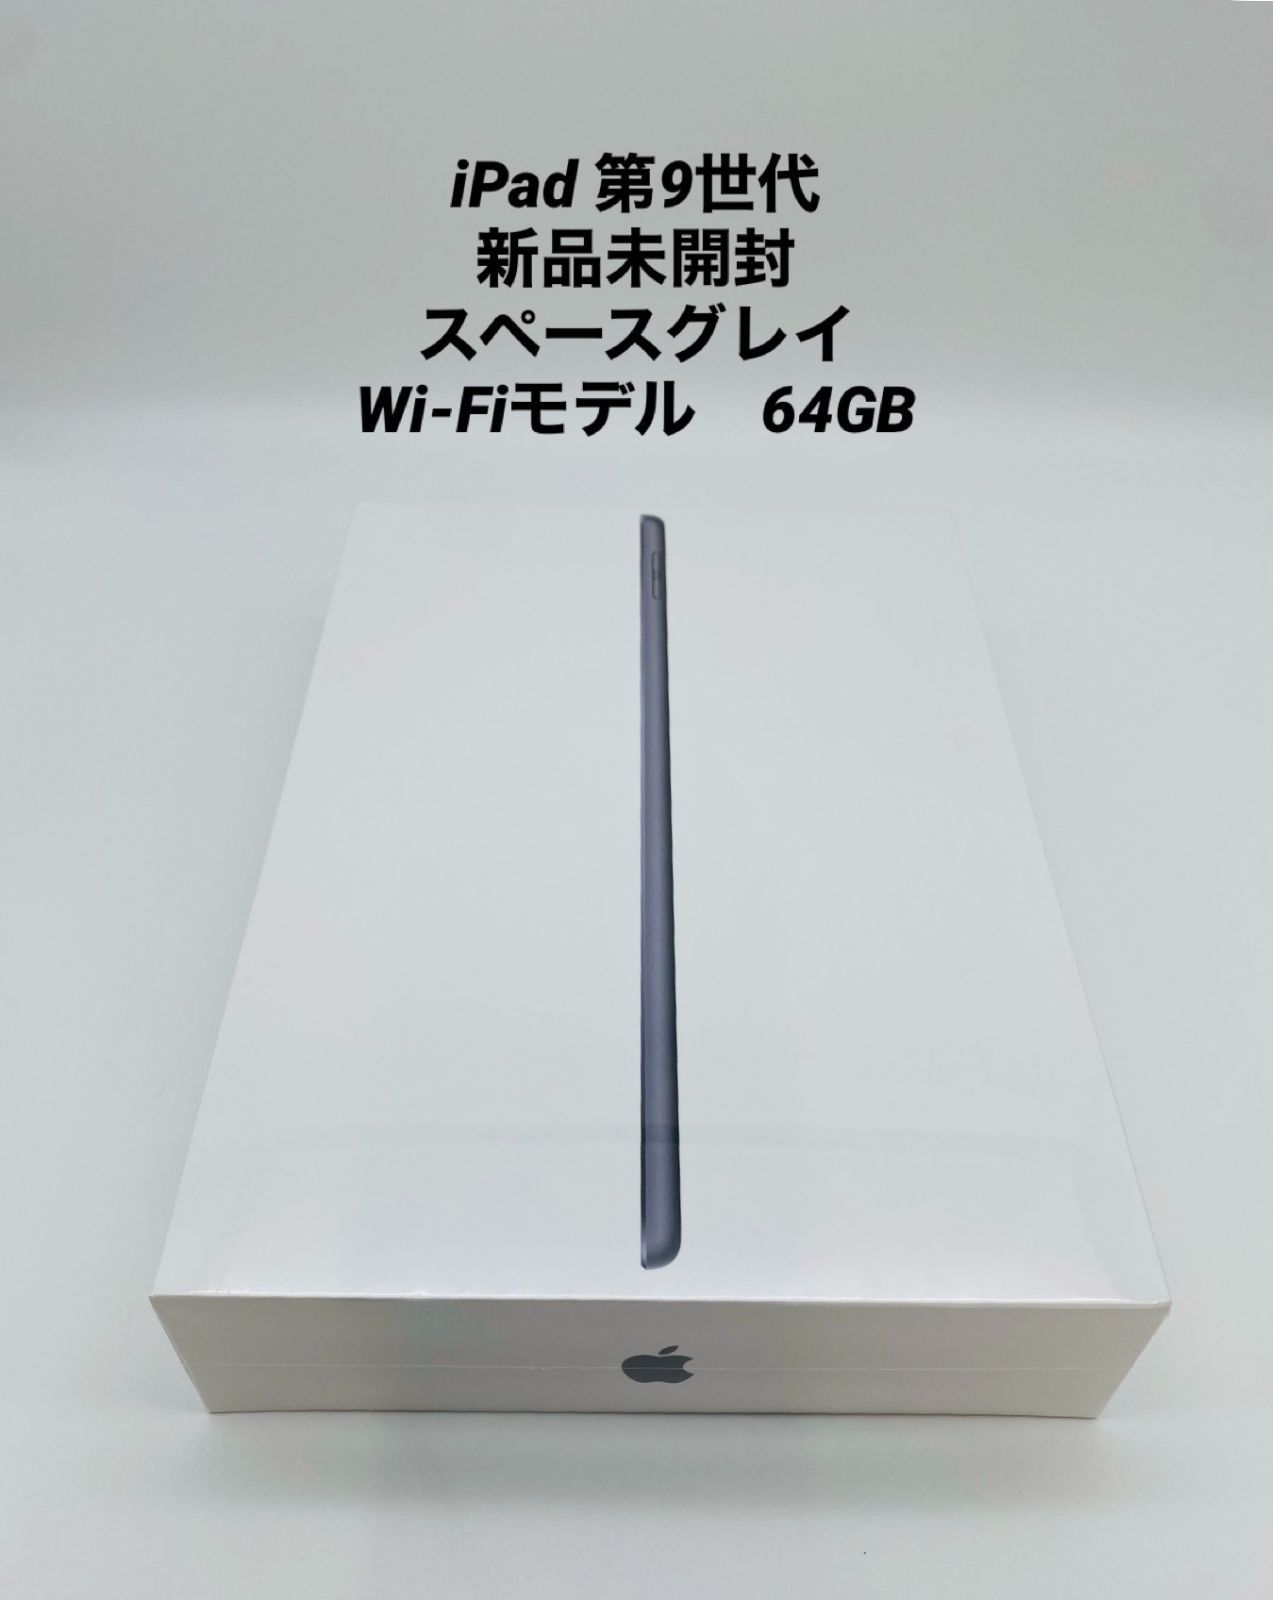 専門 Apple iPad(第9世代)64GB Wi-Fiモデル スペースグレー | www